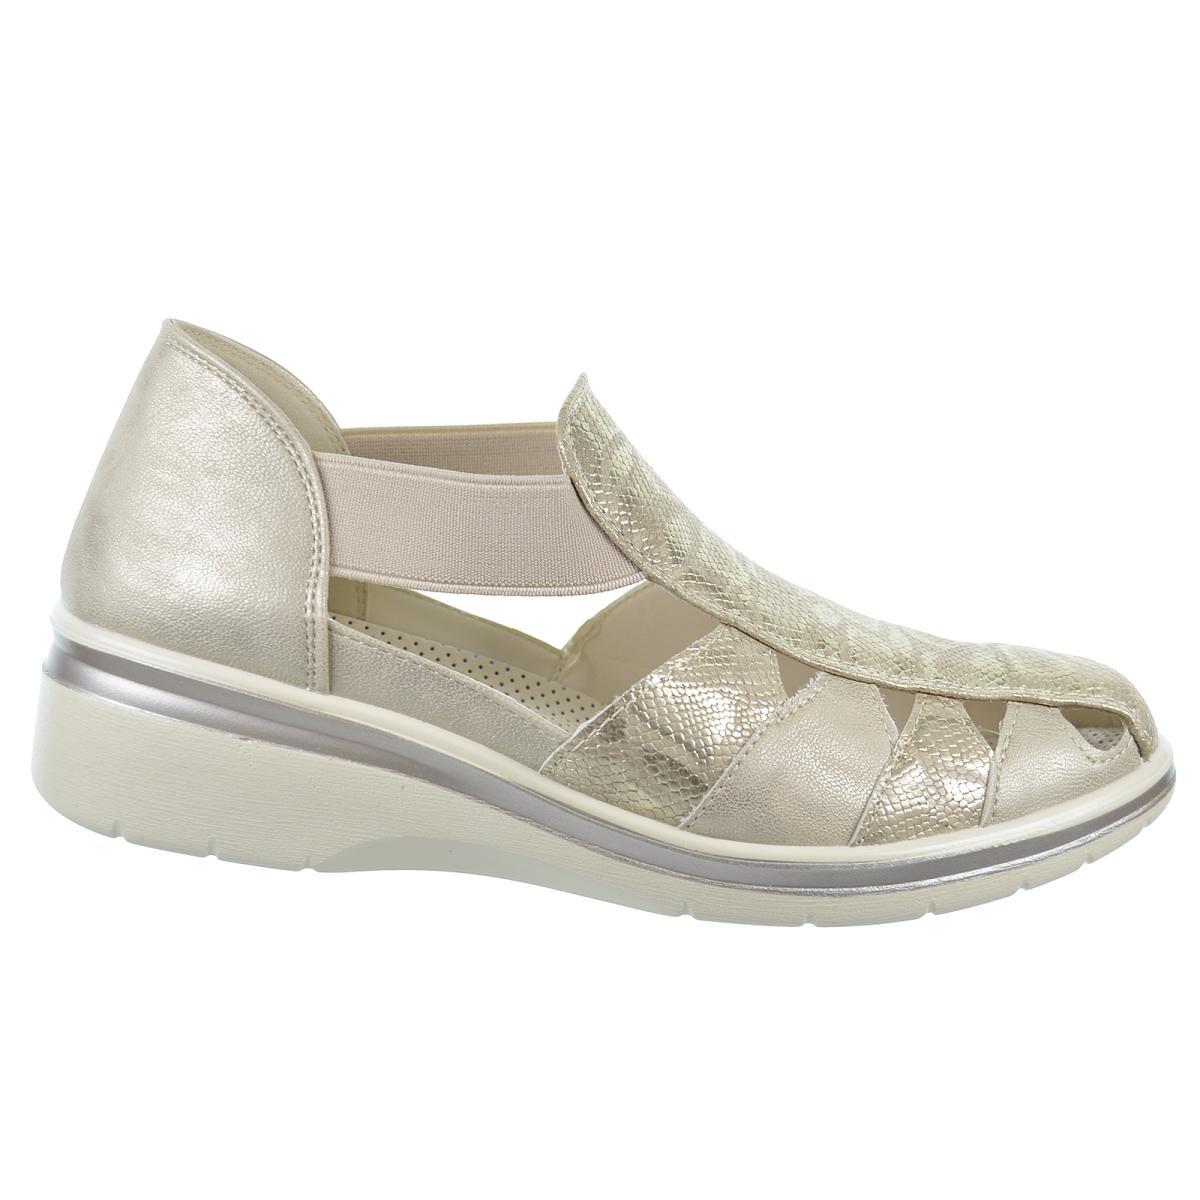 Amarpies 26316 Zapato Confort estilo Sandalia Cuña Mujer